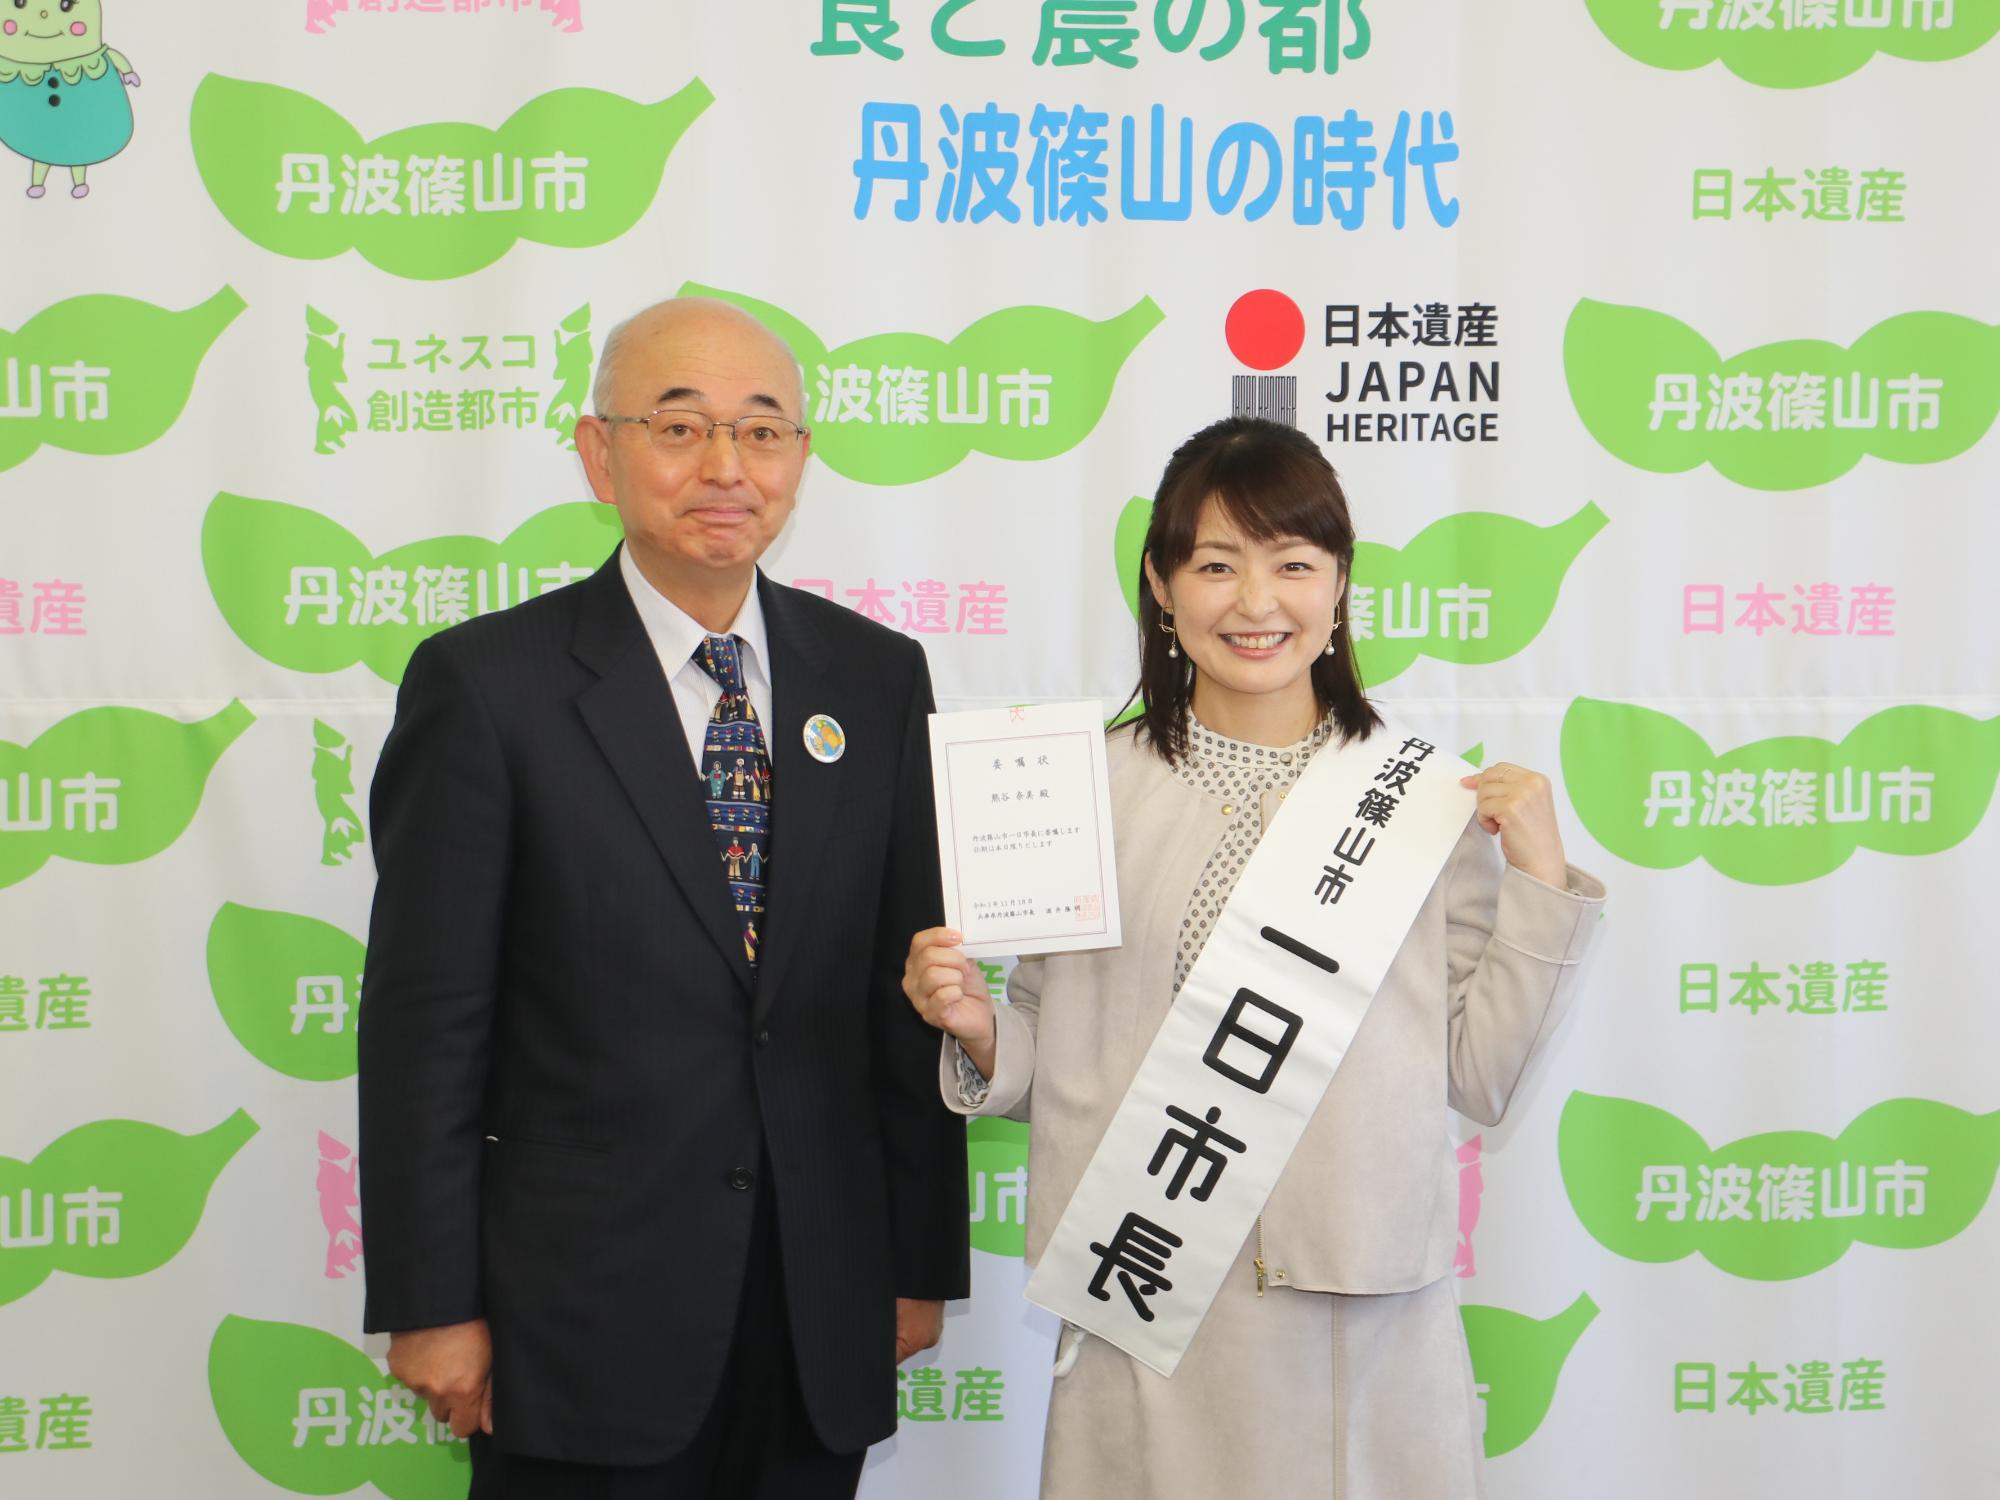 丹波篠山市一日市長というたすきをかけて、右手に委嘱状を持った熊谷市長と、酒井市長の記念撮影